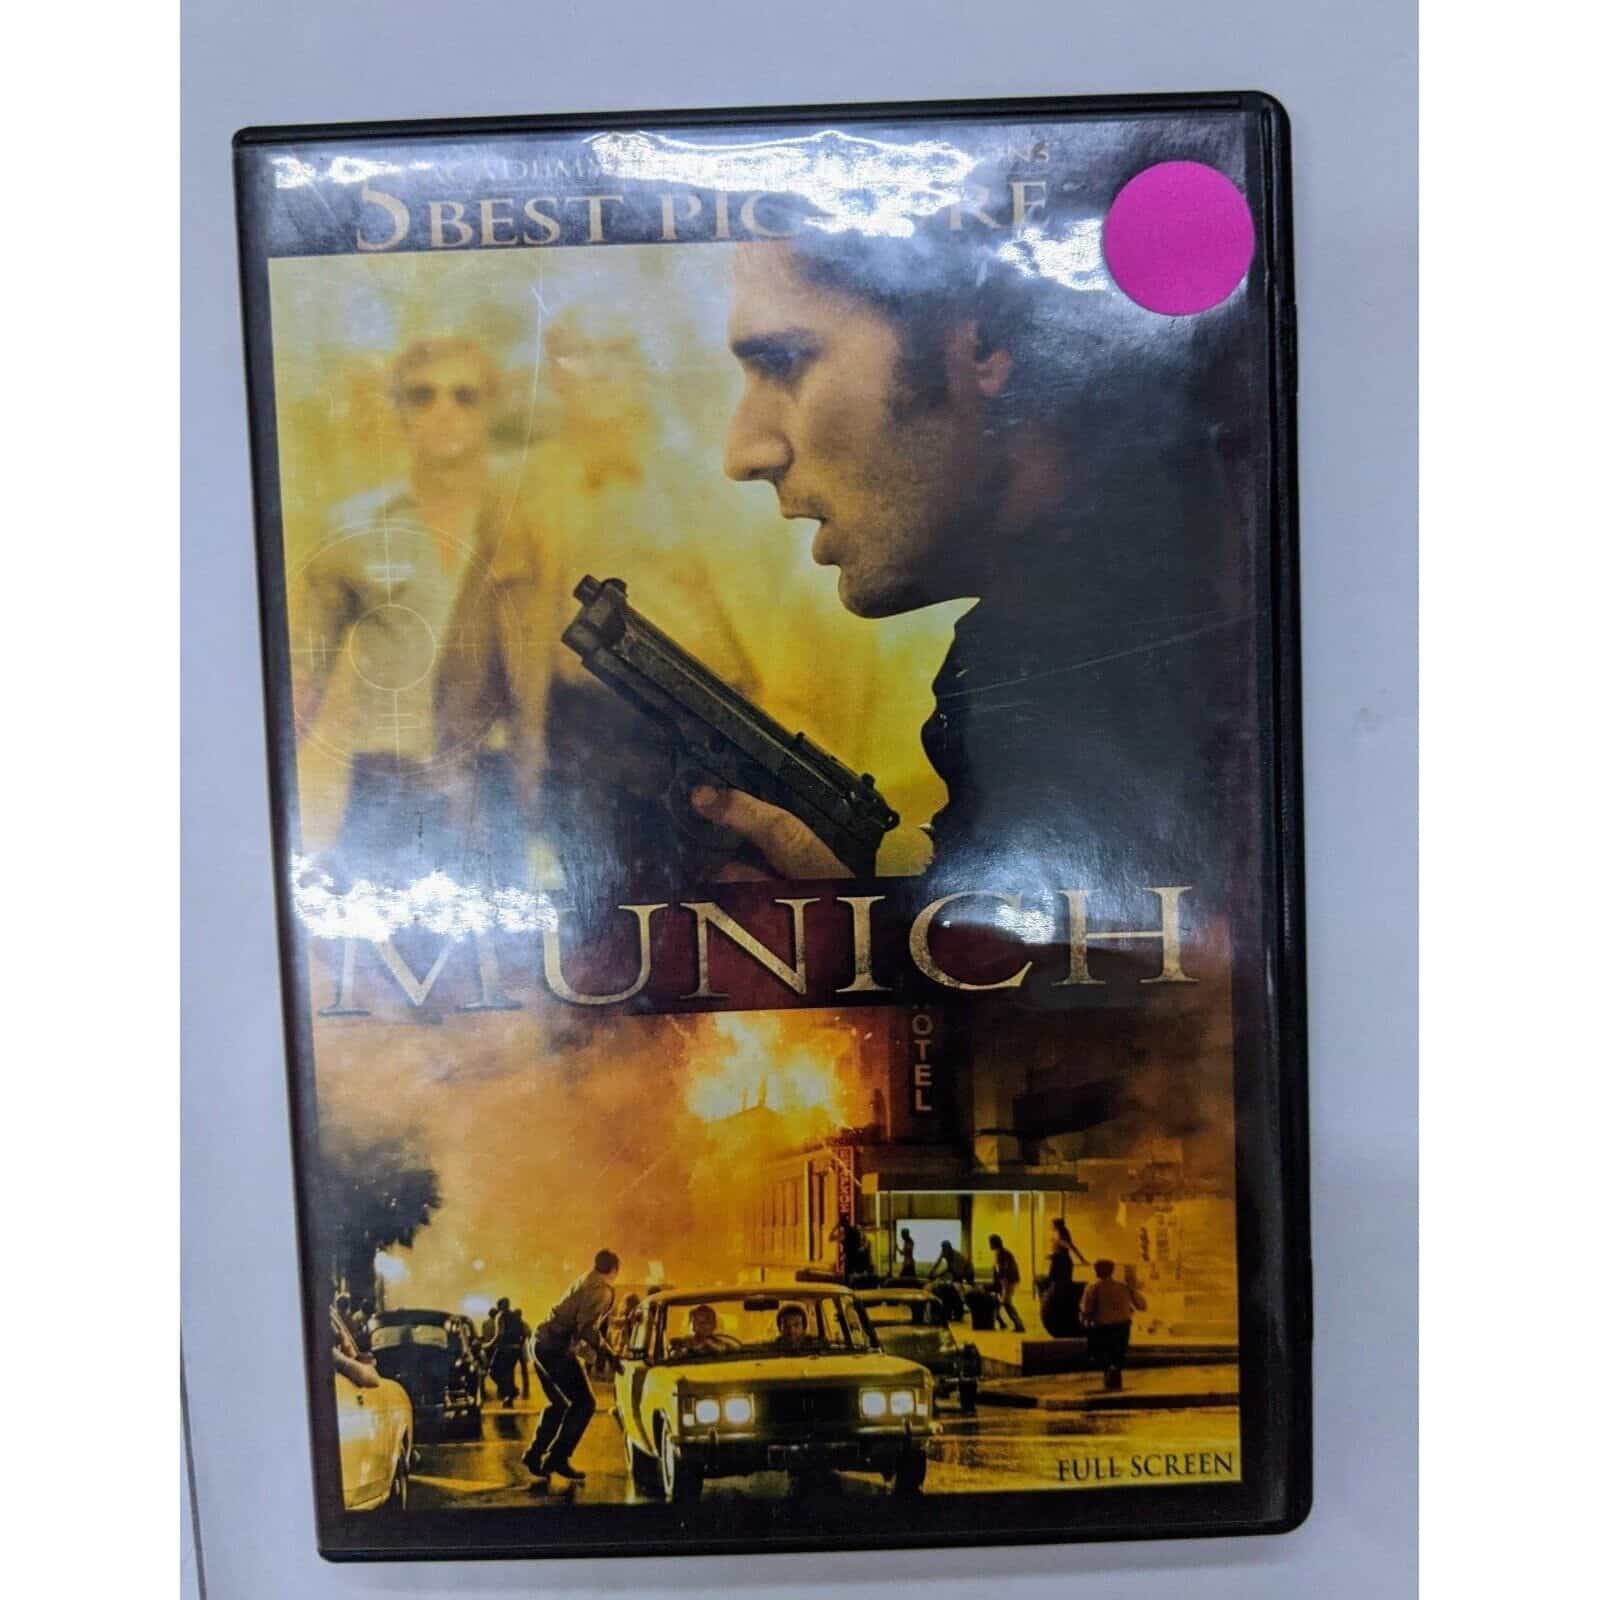 Munich DVD movie – Best Picture Edition